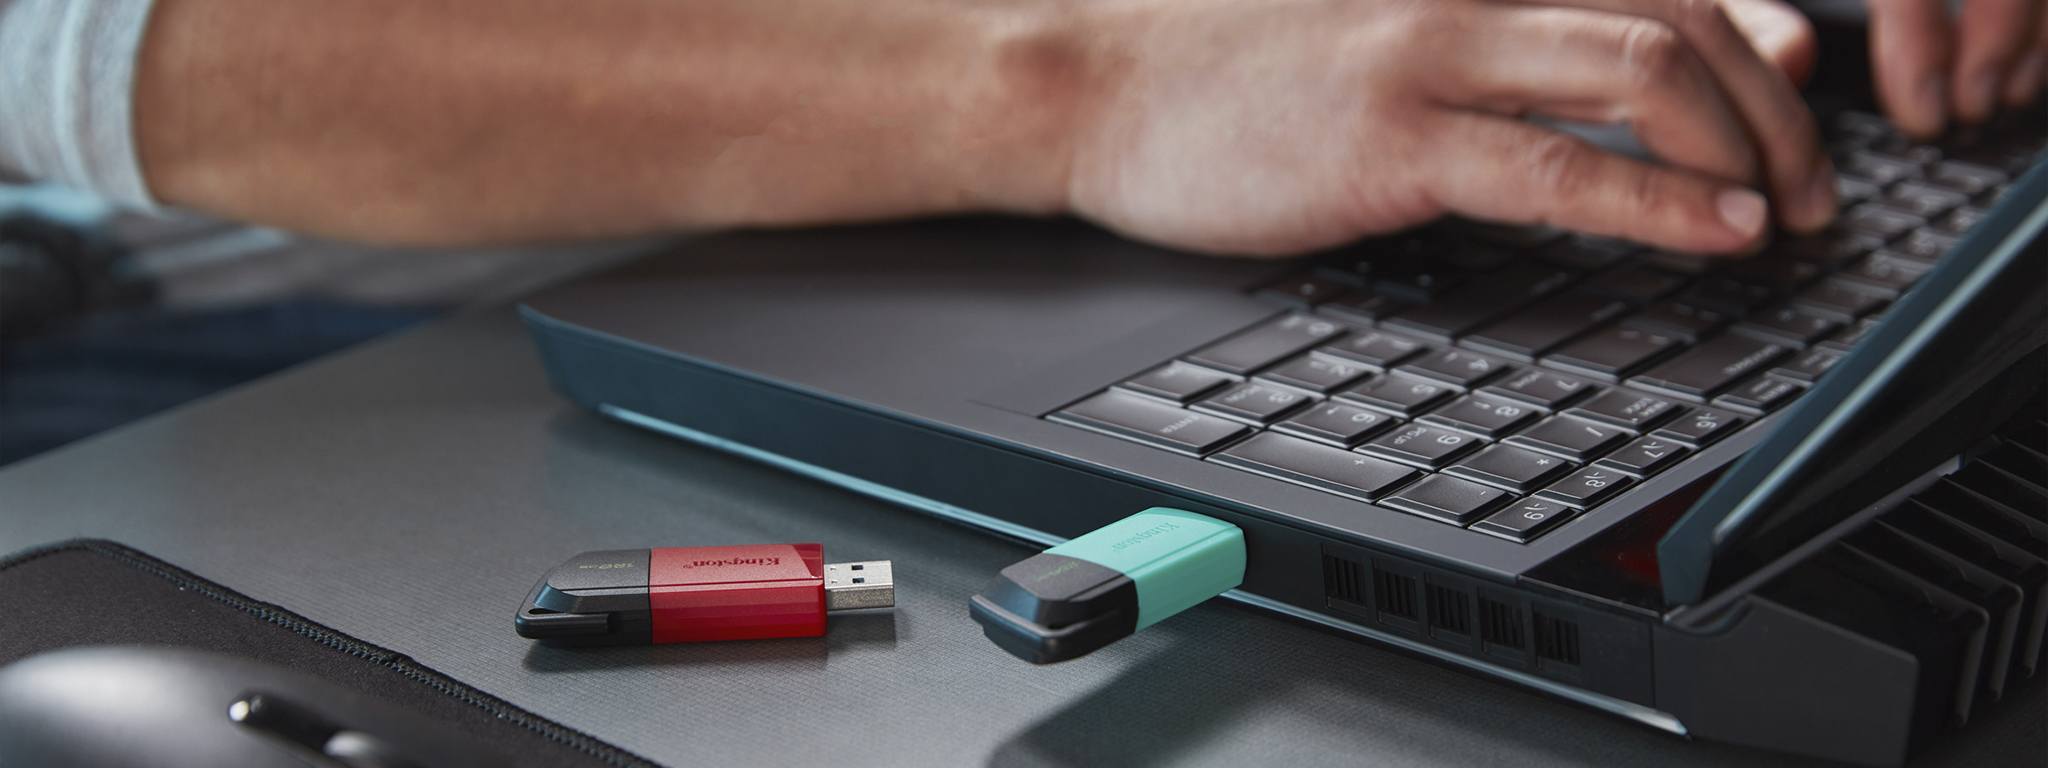 2 pendrives USB DT Exodia M, um com uma capa verde e outro com uma capa vermelha, na beira de uma mesa com uma pessoa em um laptop ao fundo